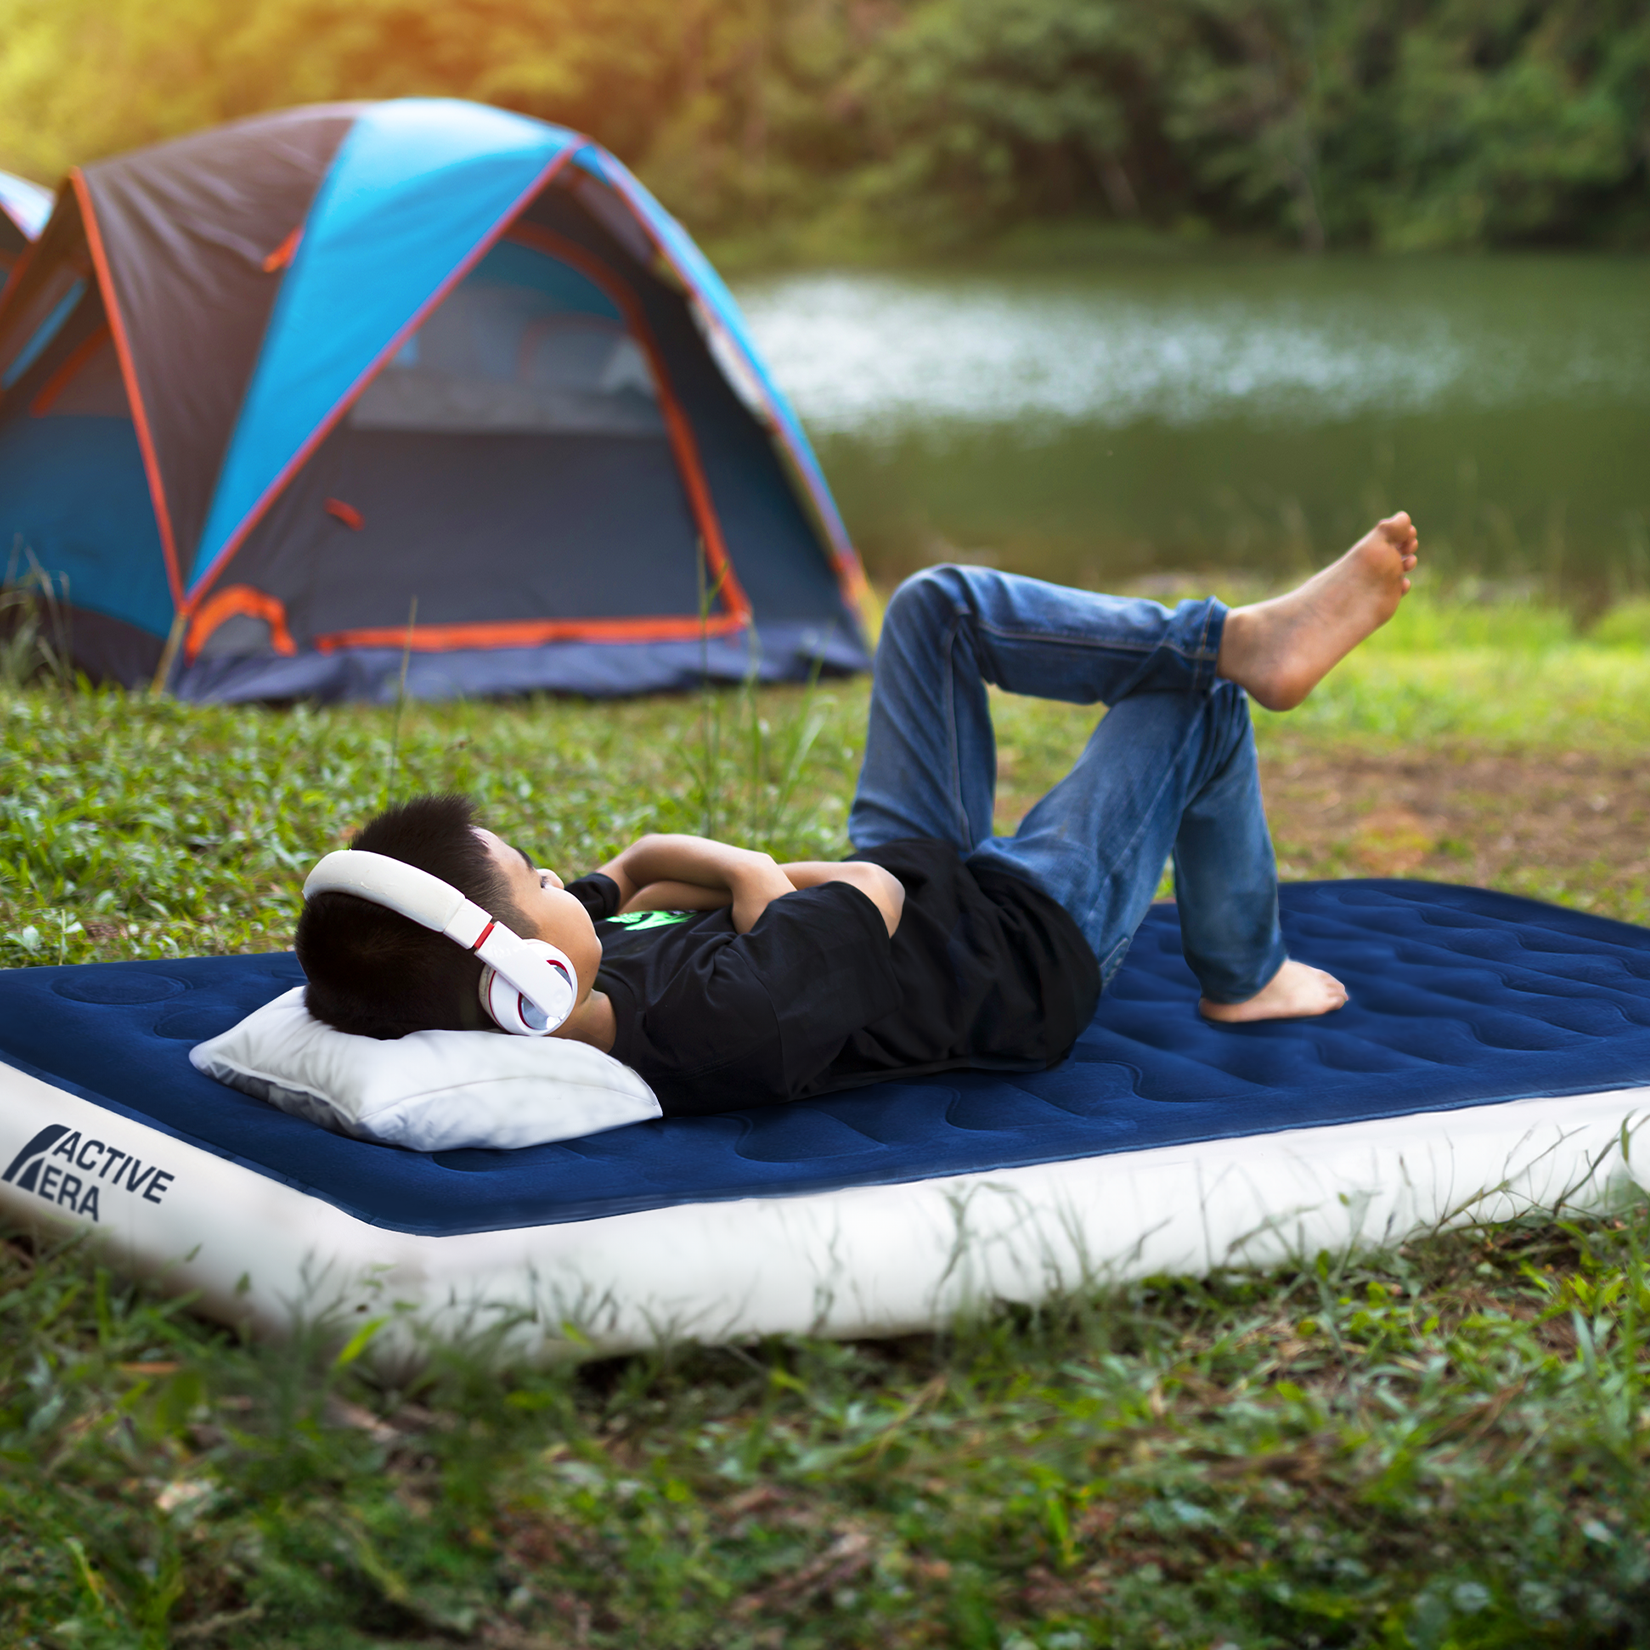 Cama de aire individual para acampar – Azul marino/Blanco